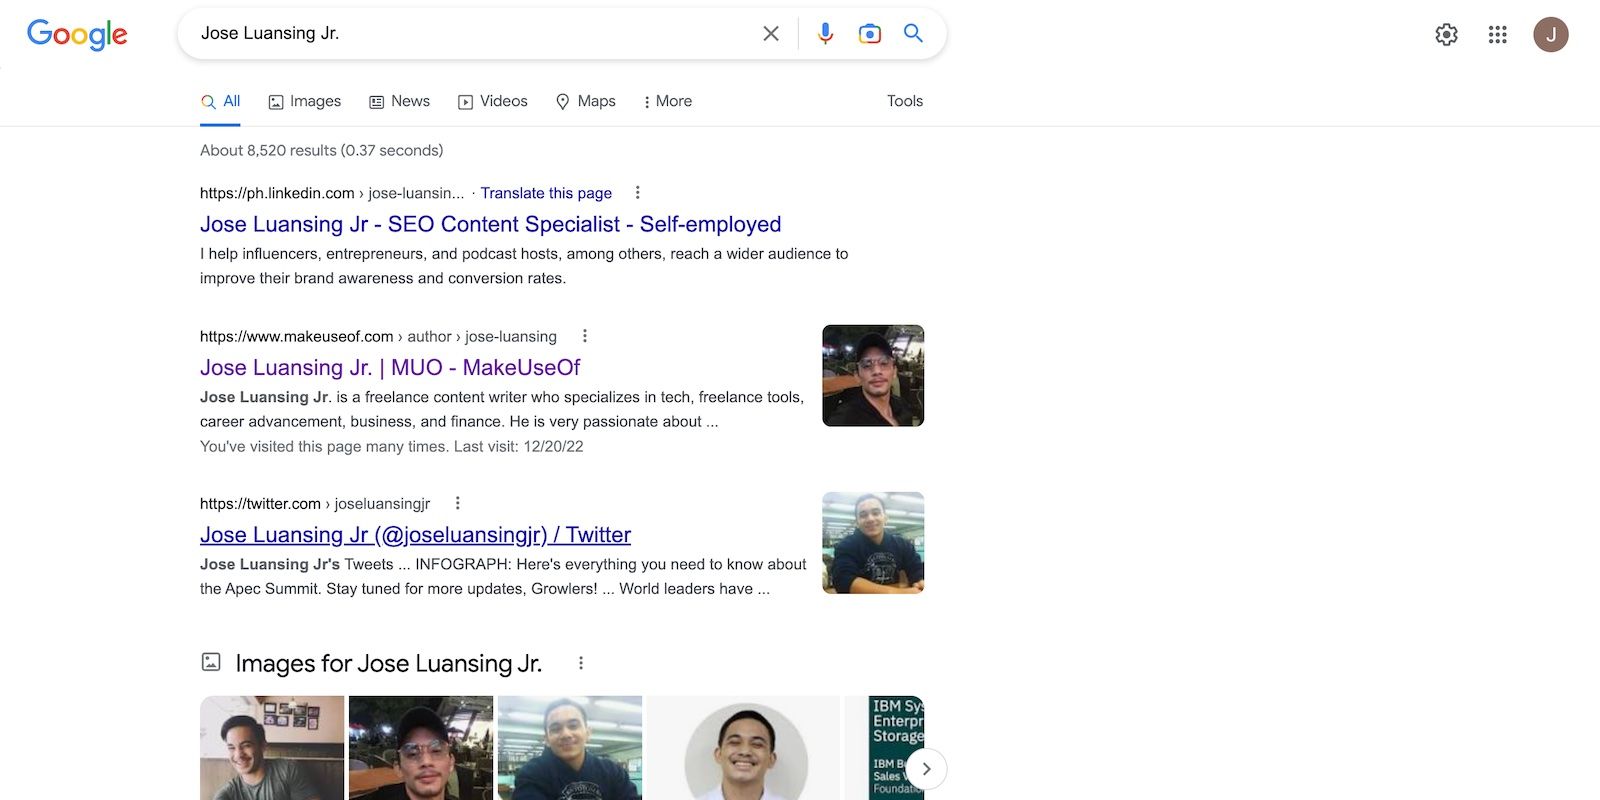 Les résultats de recherche Google pour Jose Luansing Jr.